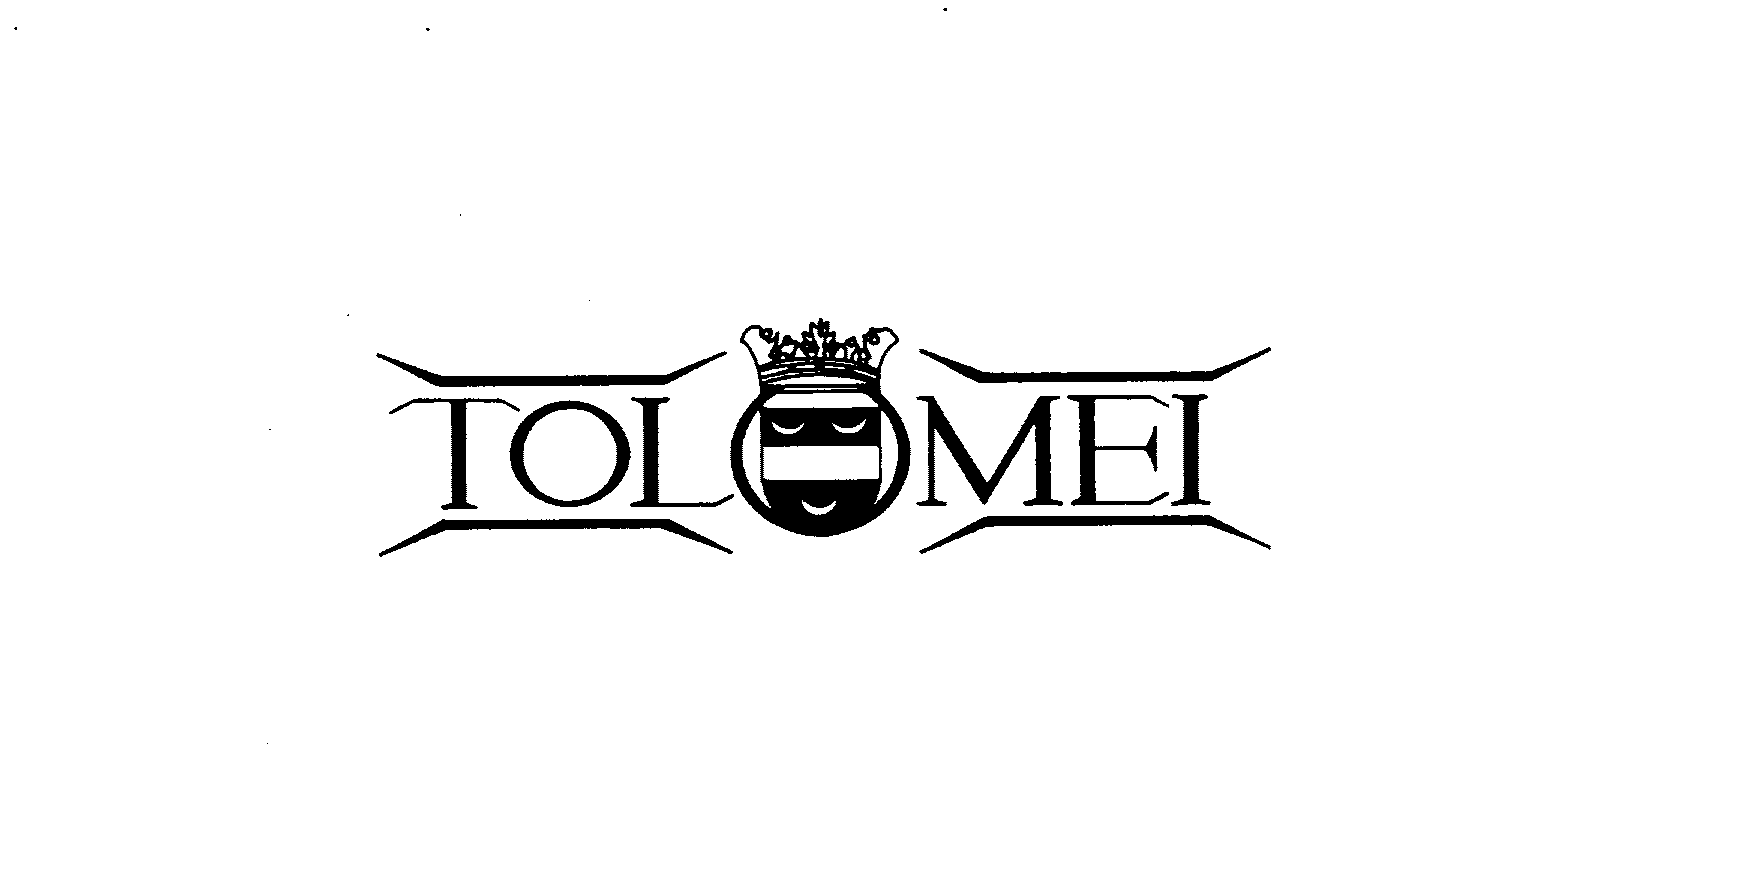 TOLOMEI